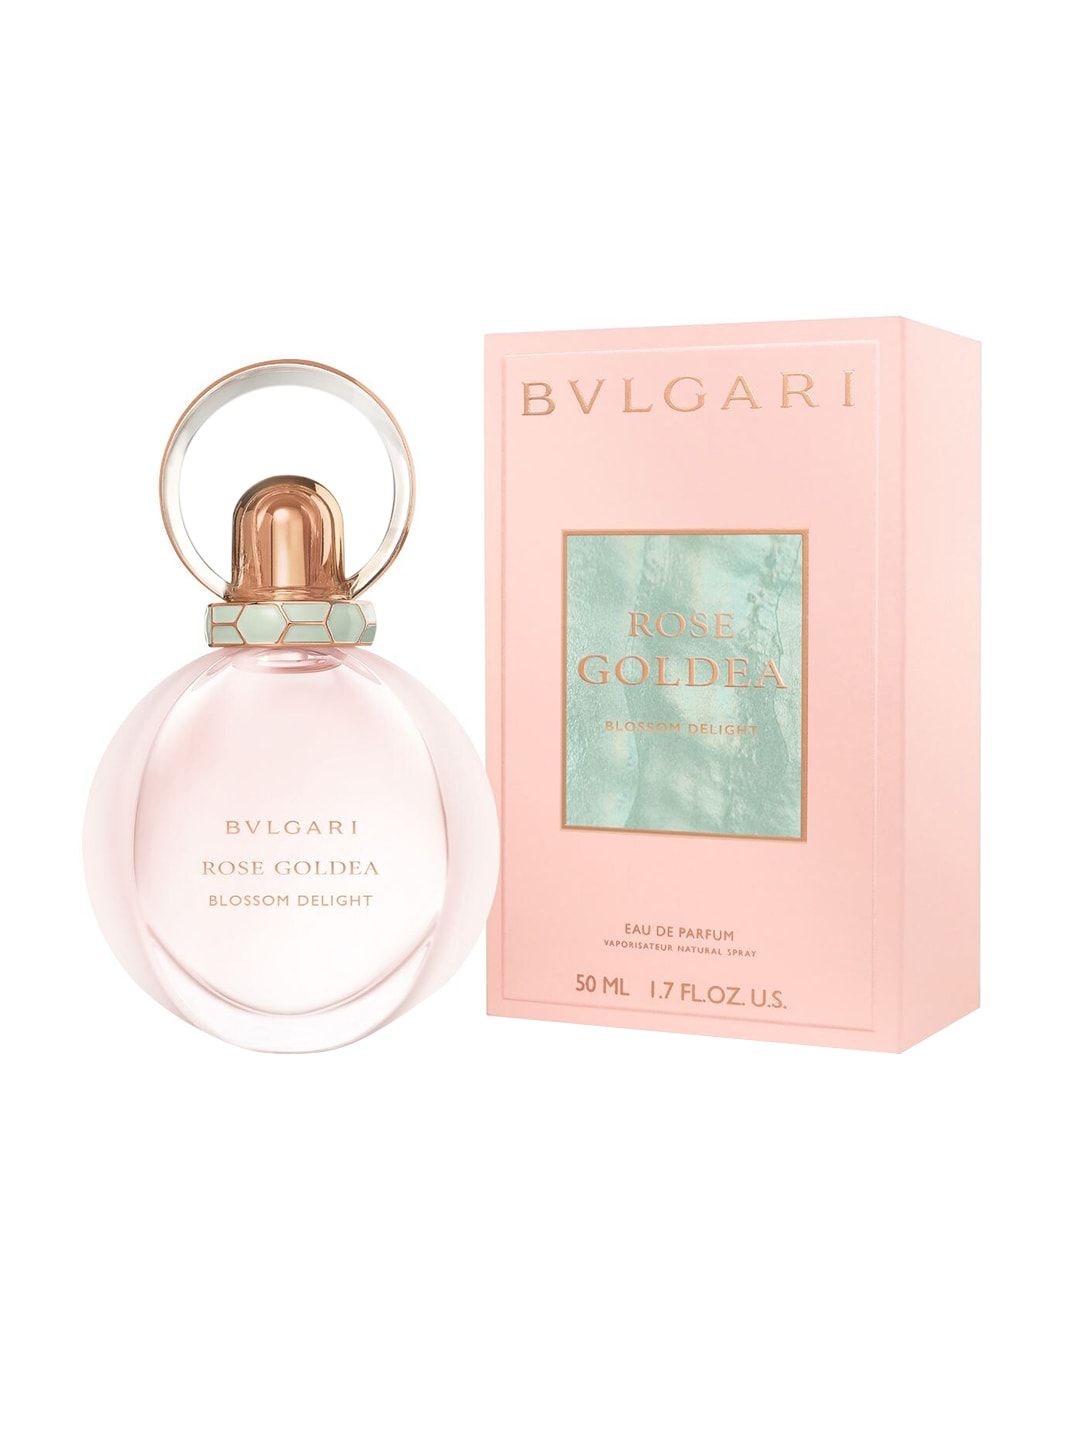 Bvlgari Rose Goldea Blossom Delight Eau de Parfum 50ml Price in India